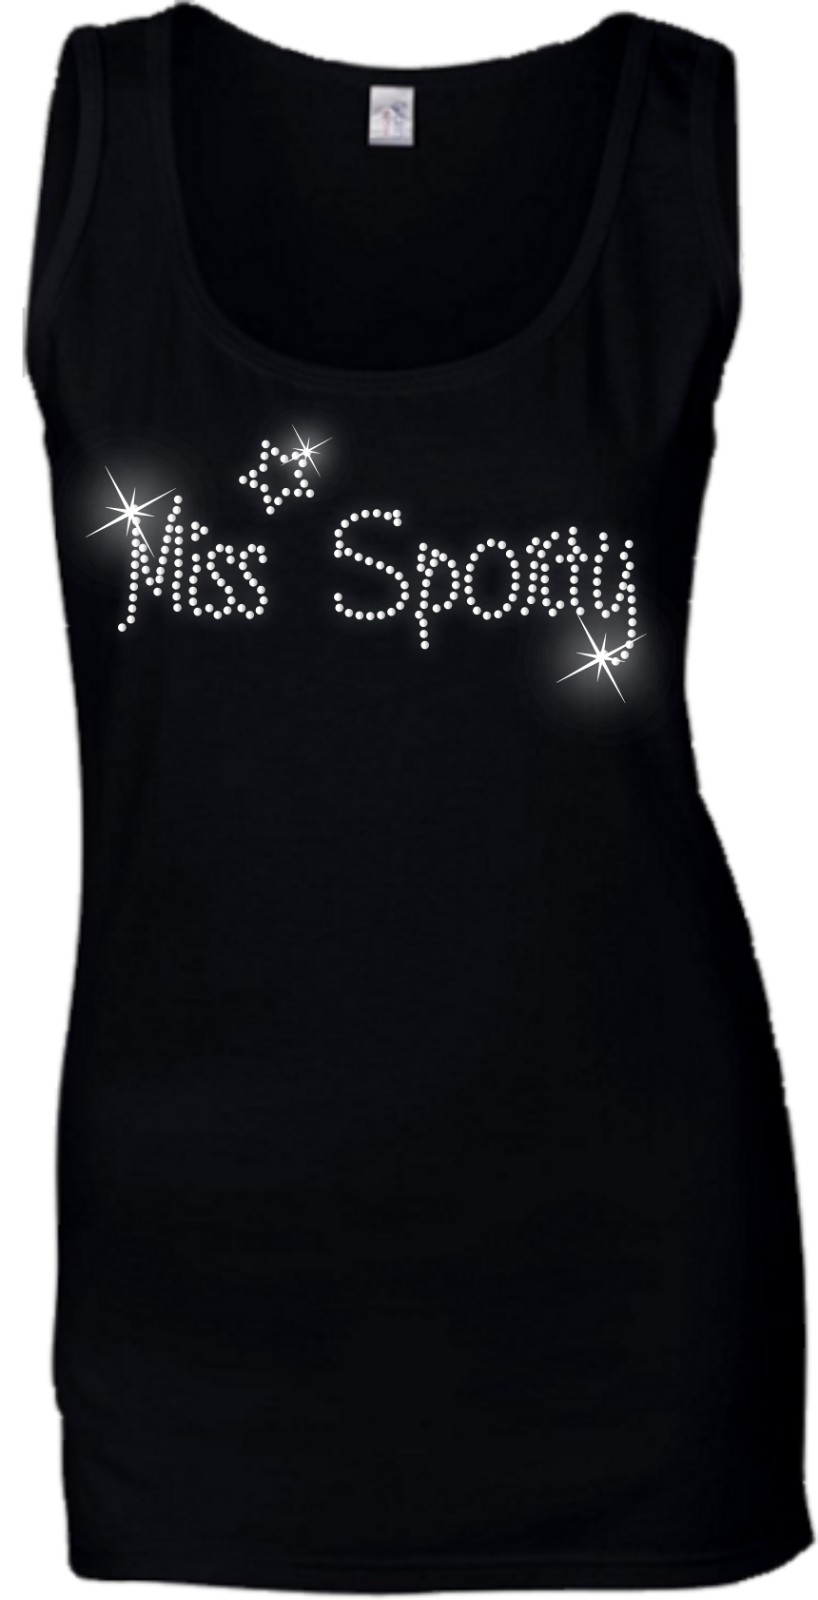 Miss sporty